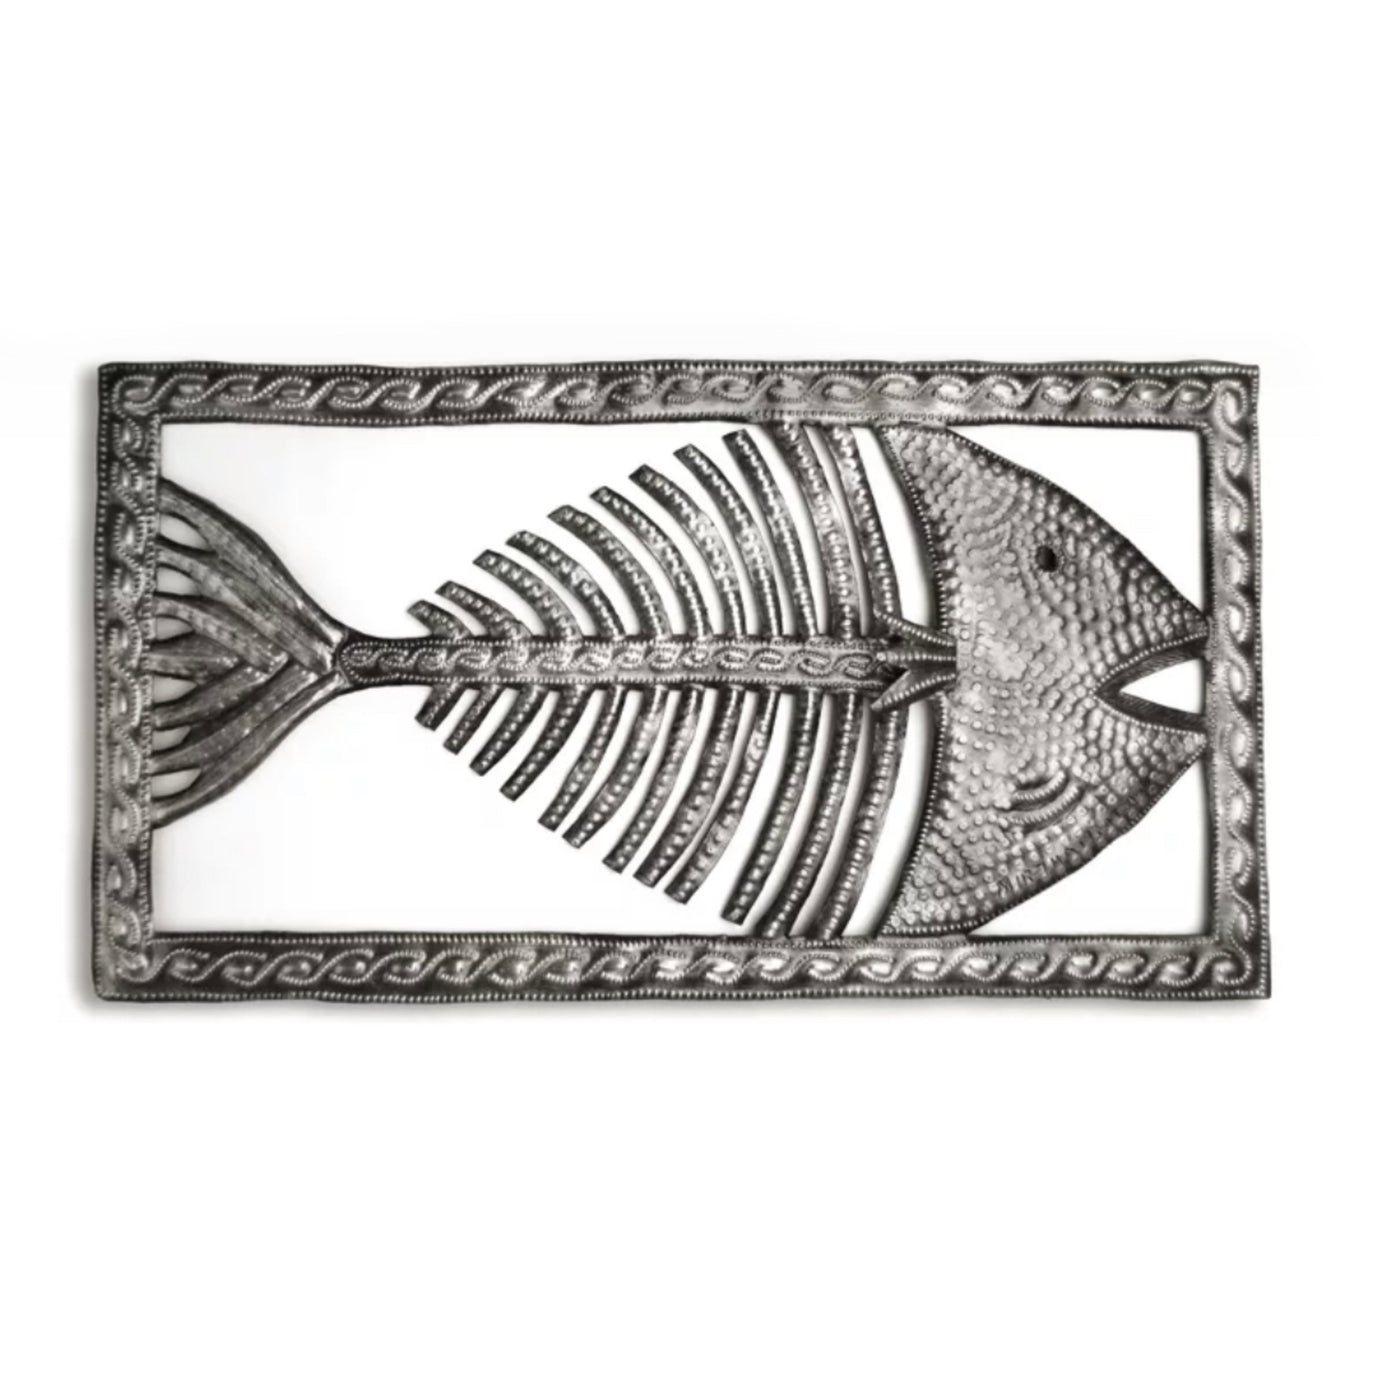 Fish Dem Bones